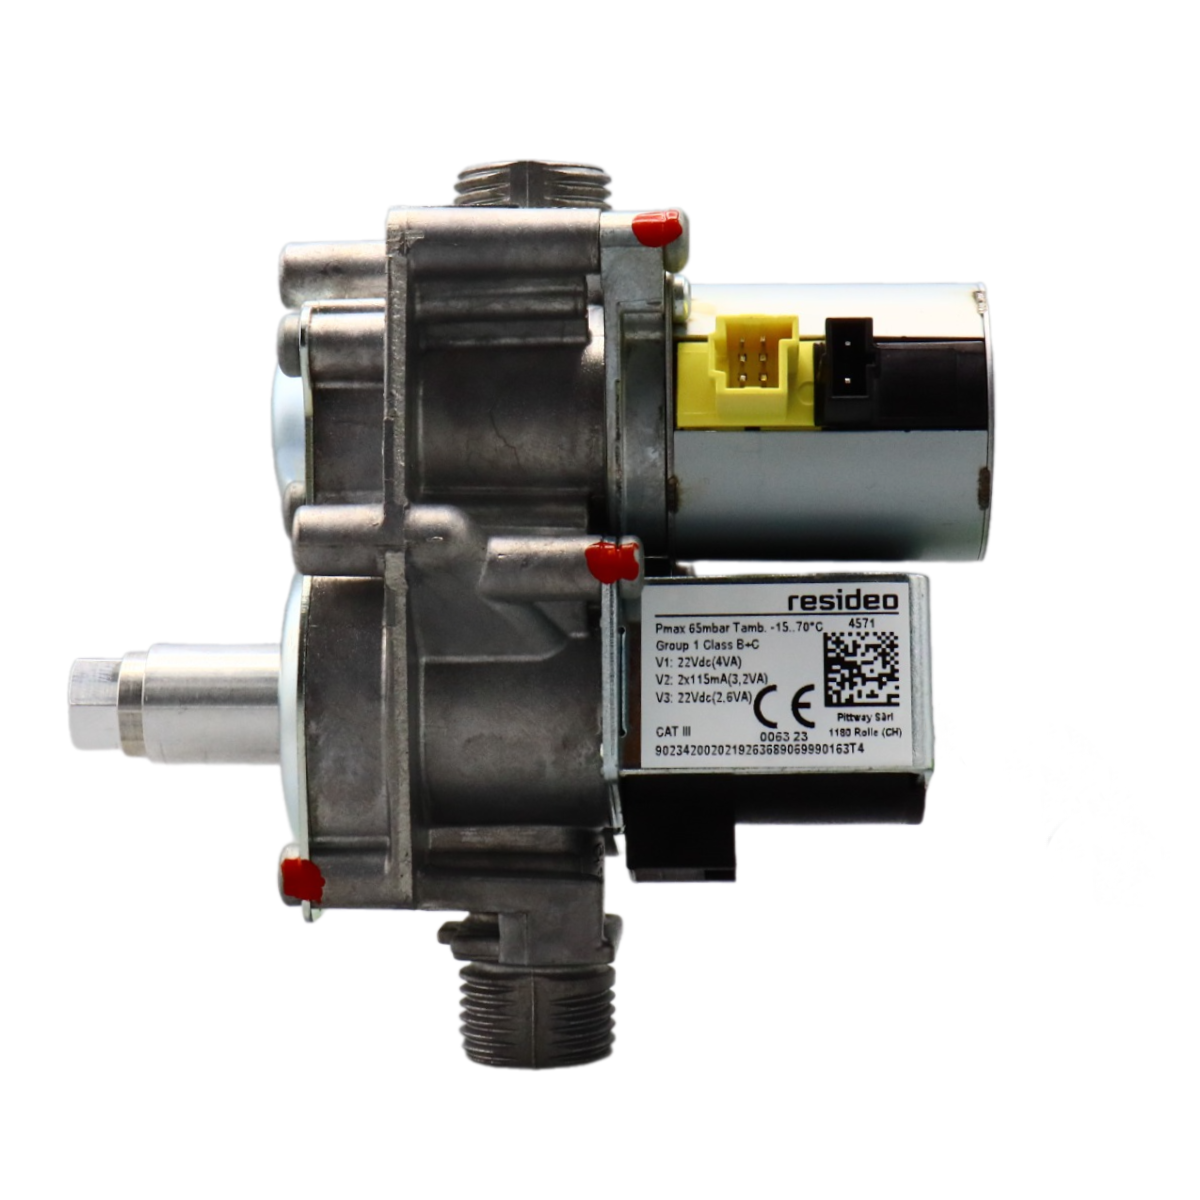 Газовый клапан VK8515MR4571U для котлов Vaillant, Protherm, Saunier Duval арт: 0020053968, 0020049296